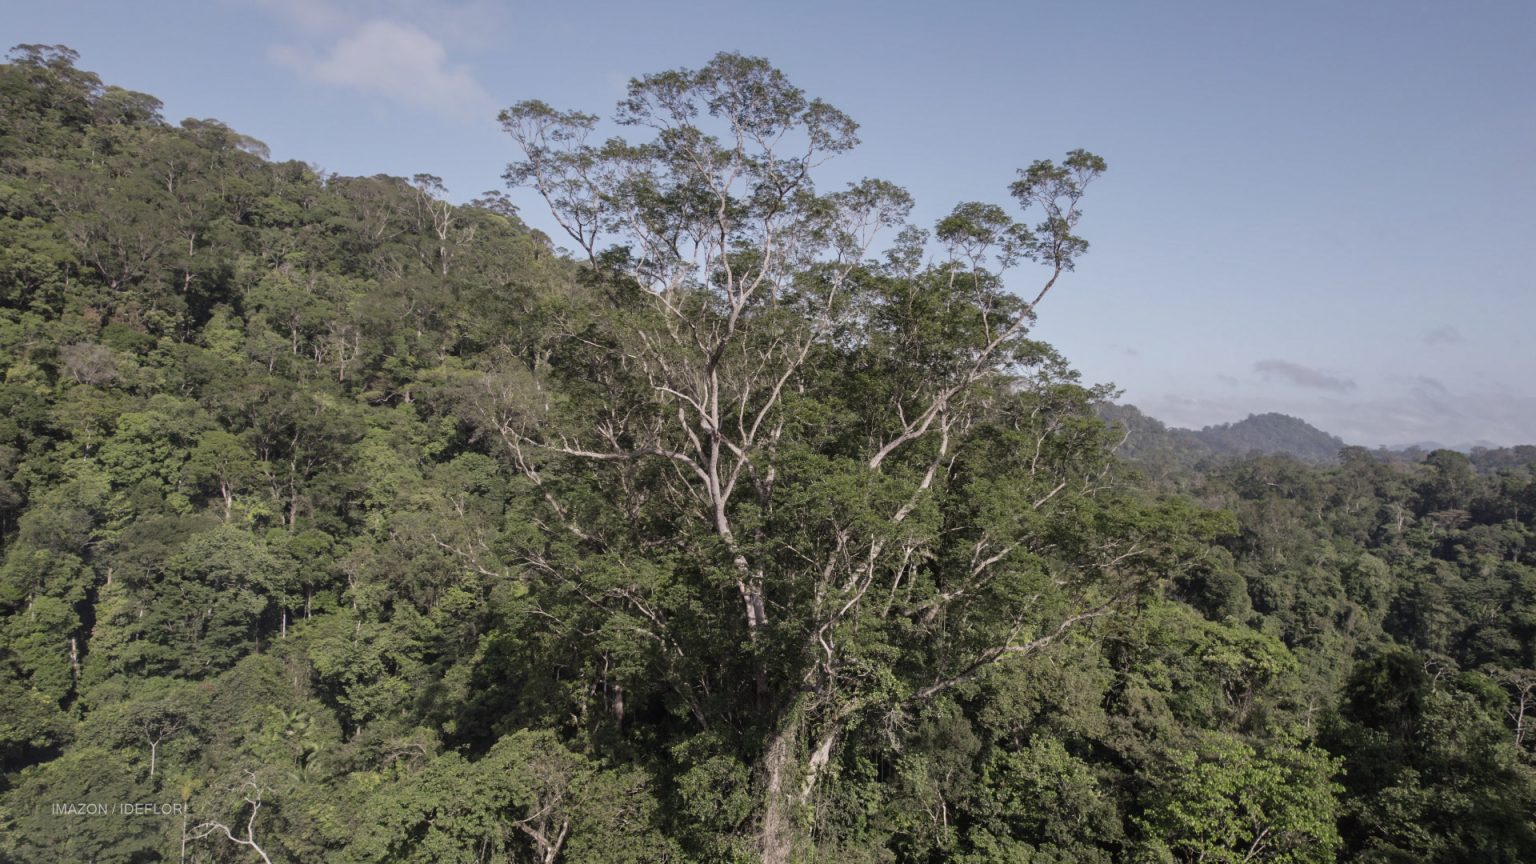 Proteger as árvores gigantes no Pará é o primeiro passo para uma aliança do futuro contra a emergência climática